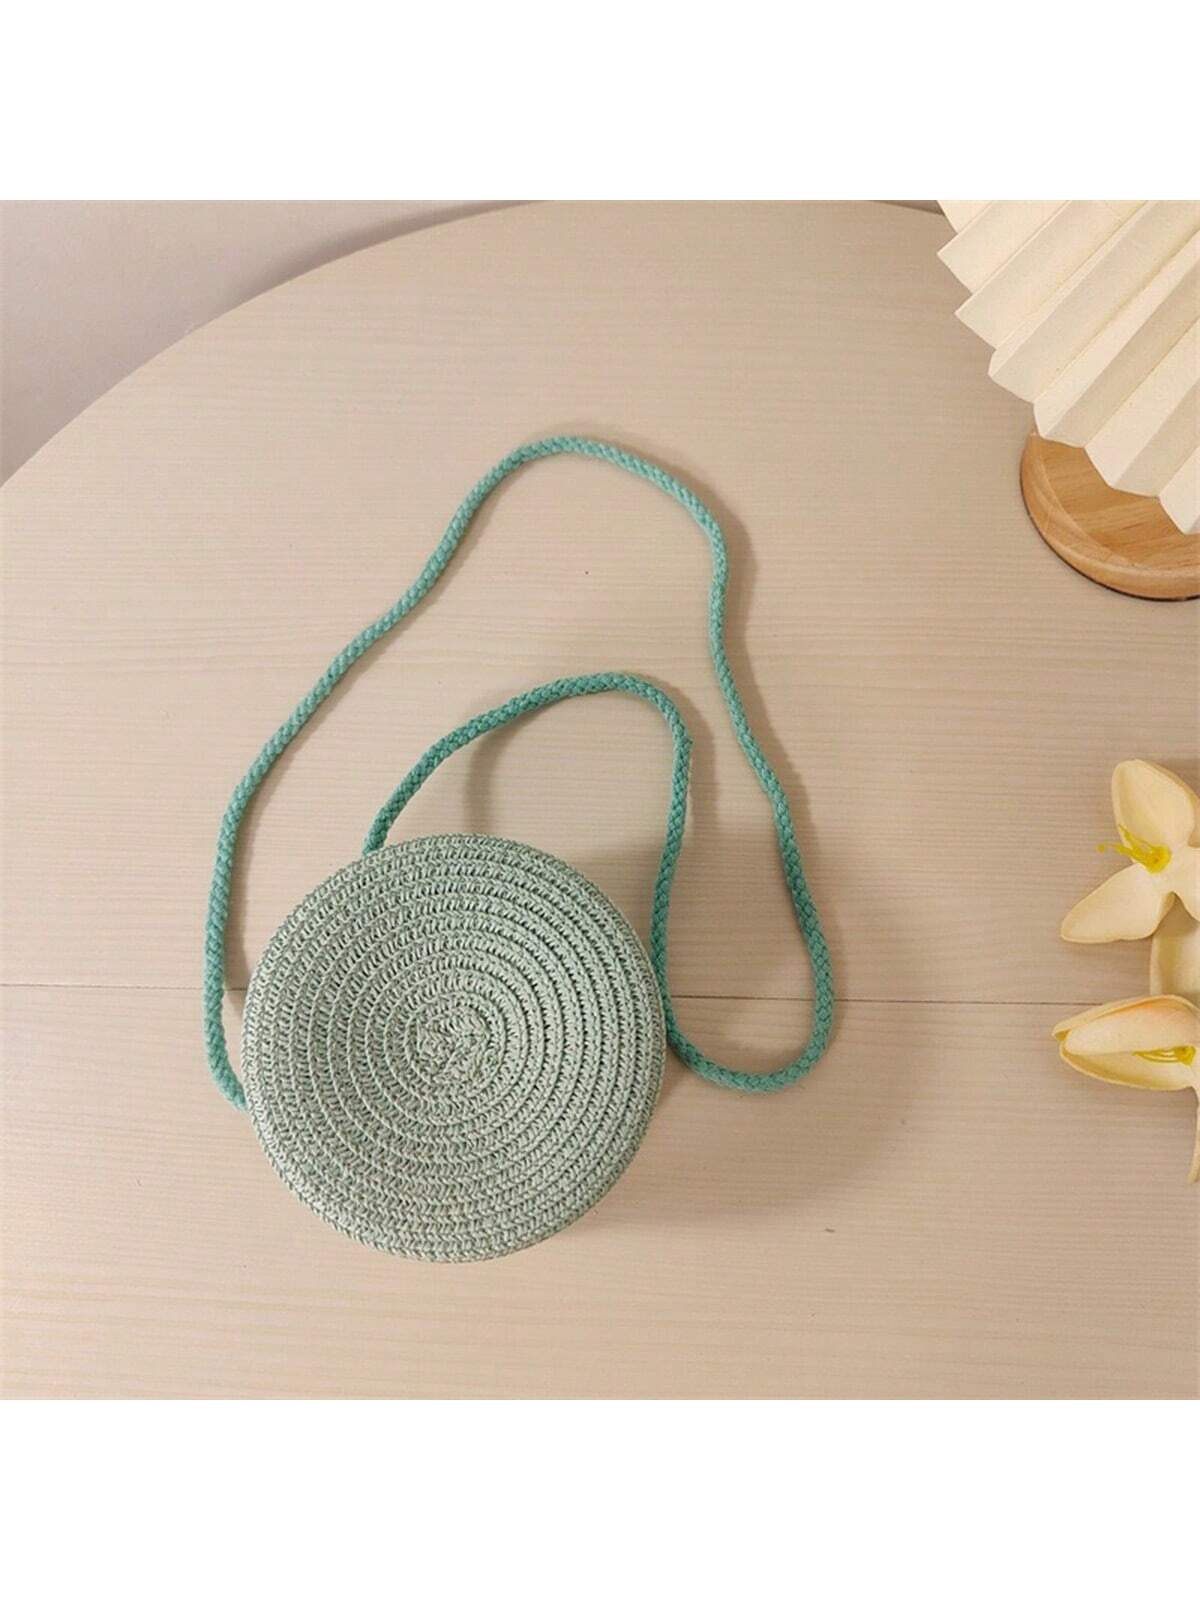 Мини-минималистичная соломенная сумка Простая круглая соломенная сумка, мятно-зеленый